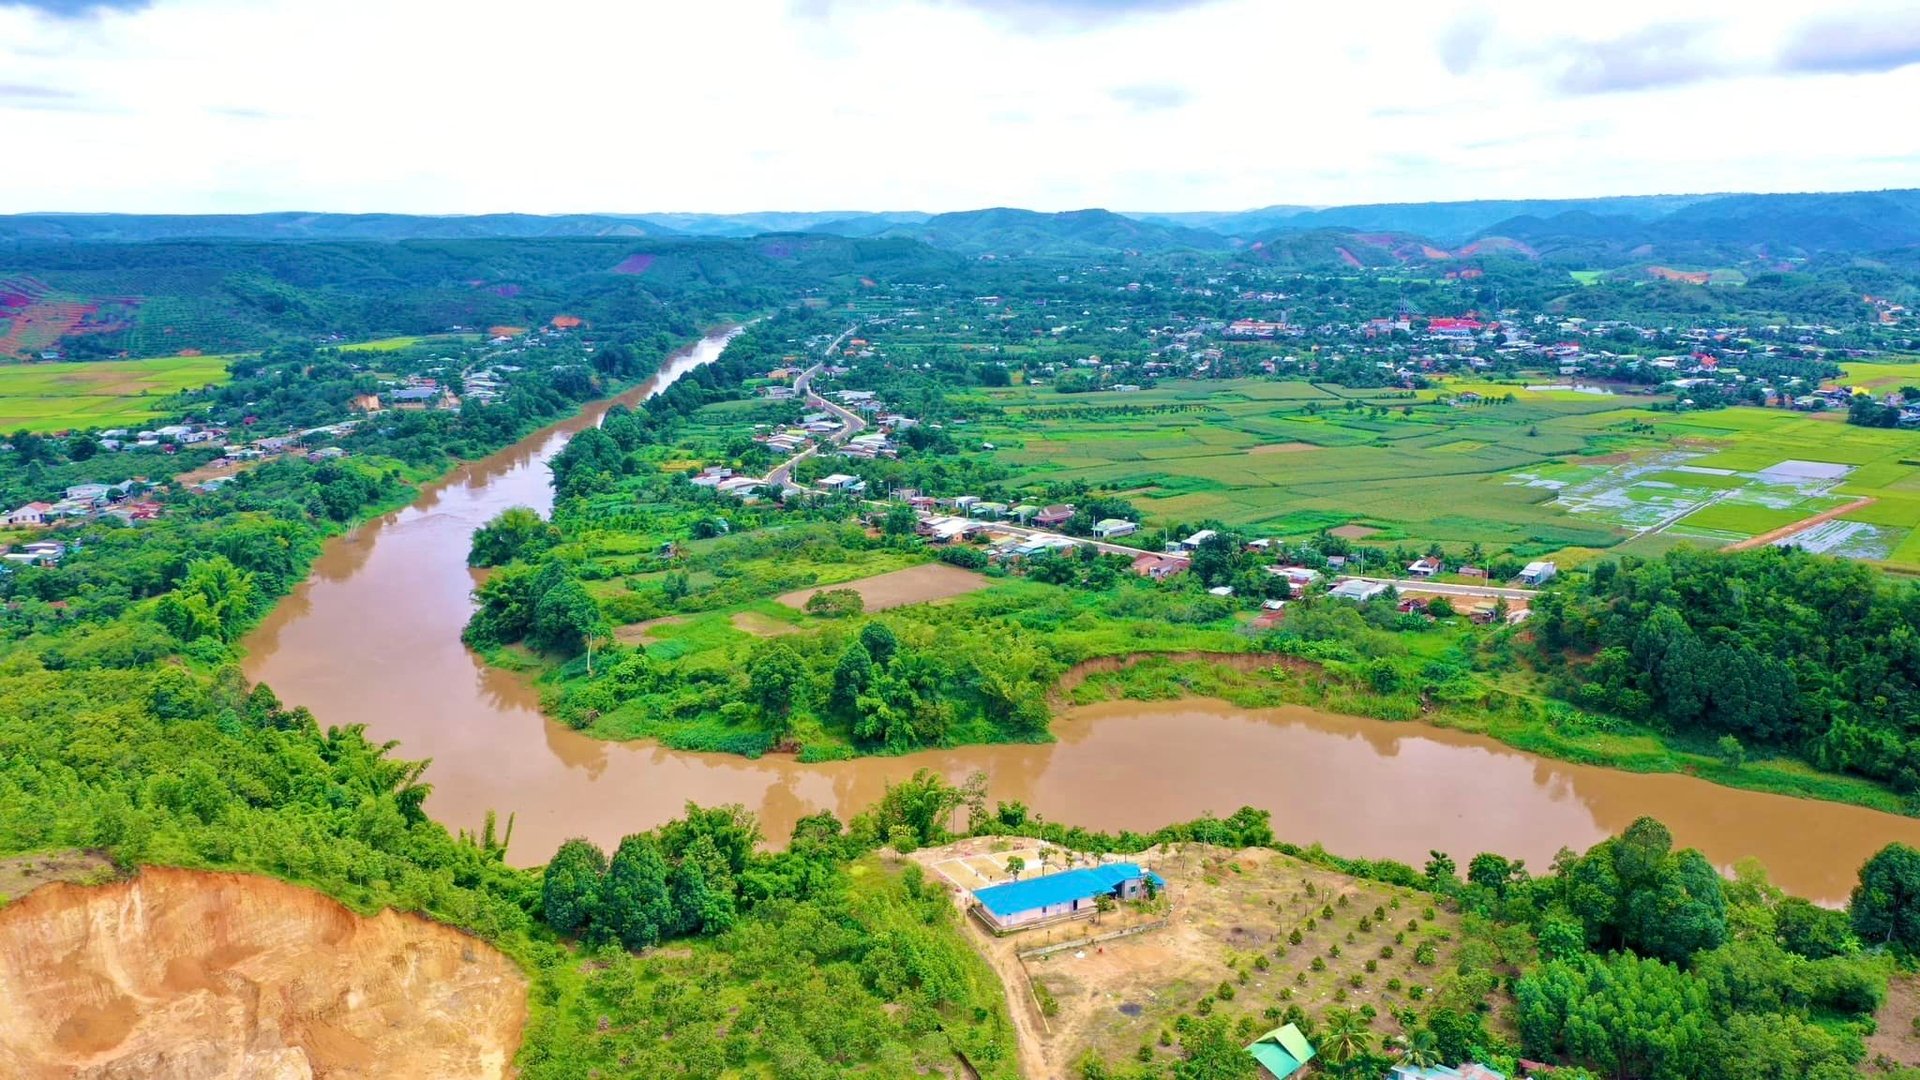 Là tỉnh miền núi nhưng Bình Phước lại có nhiều lợi thế trong phát triển ngành thủy sản. Ảnh: Trần Trung.